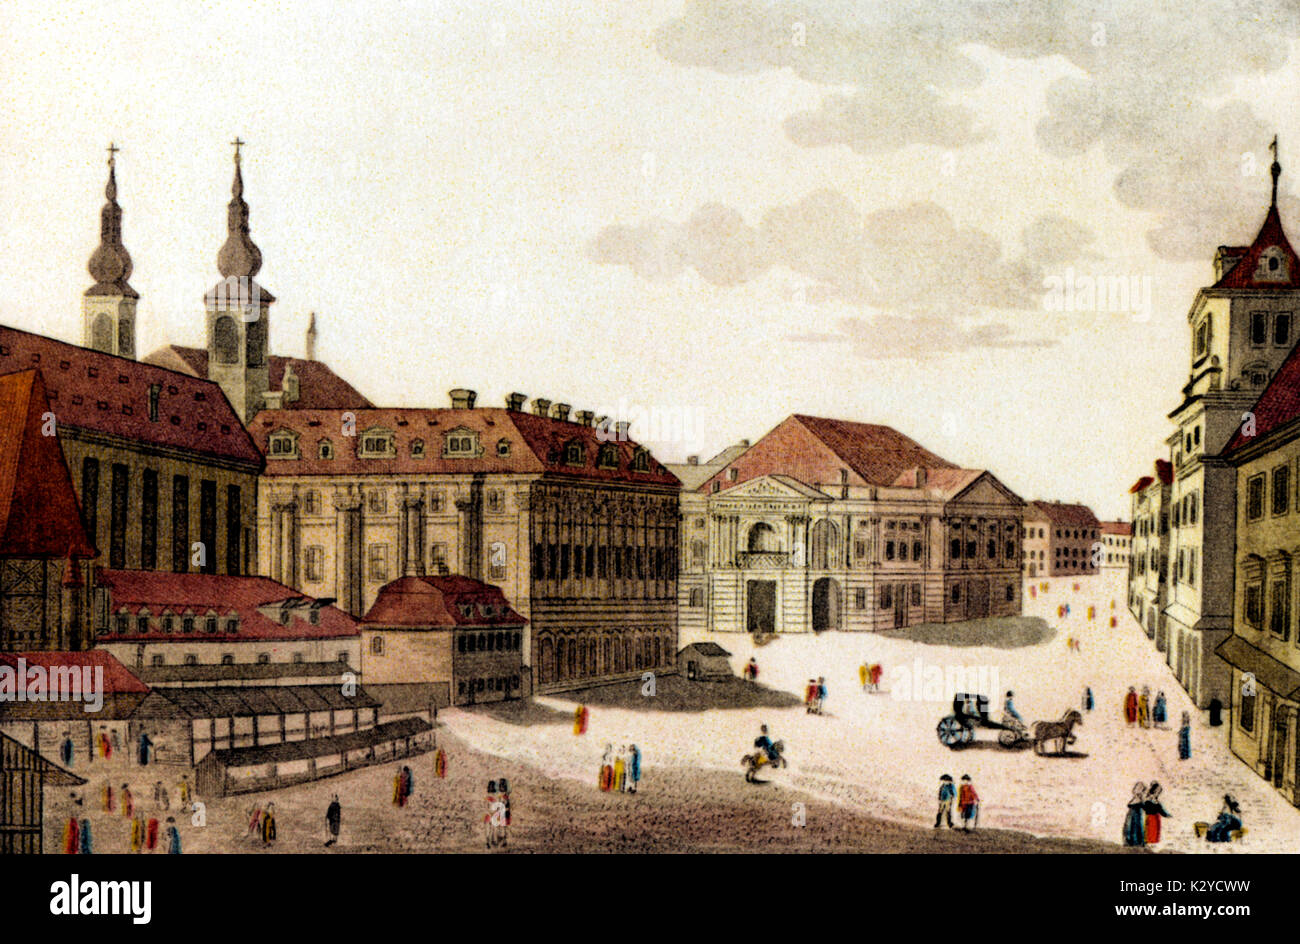 Théâtre National de Prague (Nostitzsche) où Mozart's 'Don Giovanni' a été présentée pour la première fois le 29 octobre 1787. Gravure couleur par L. Penchert. Banque D'Images